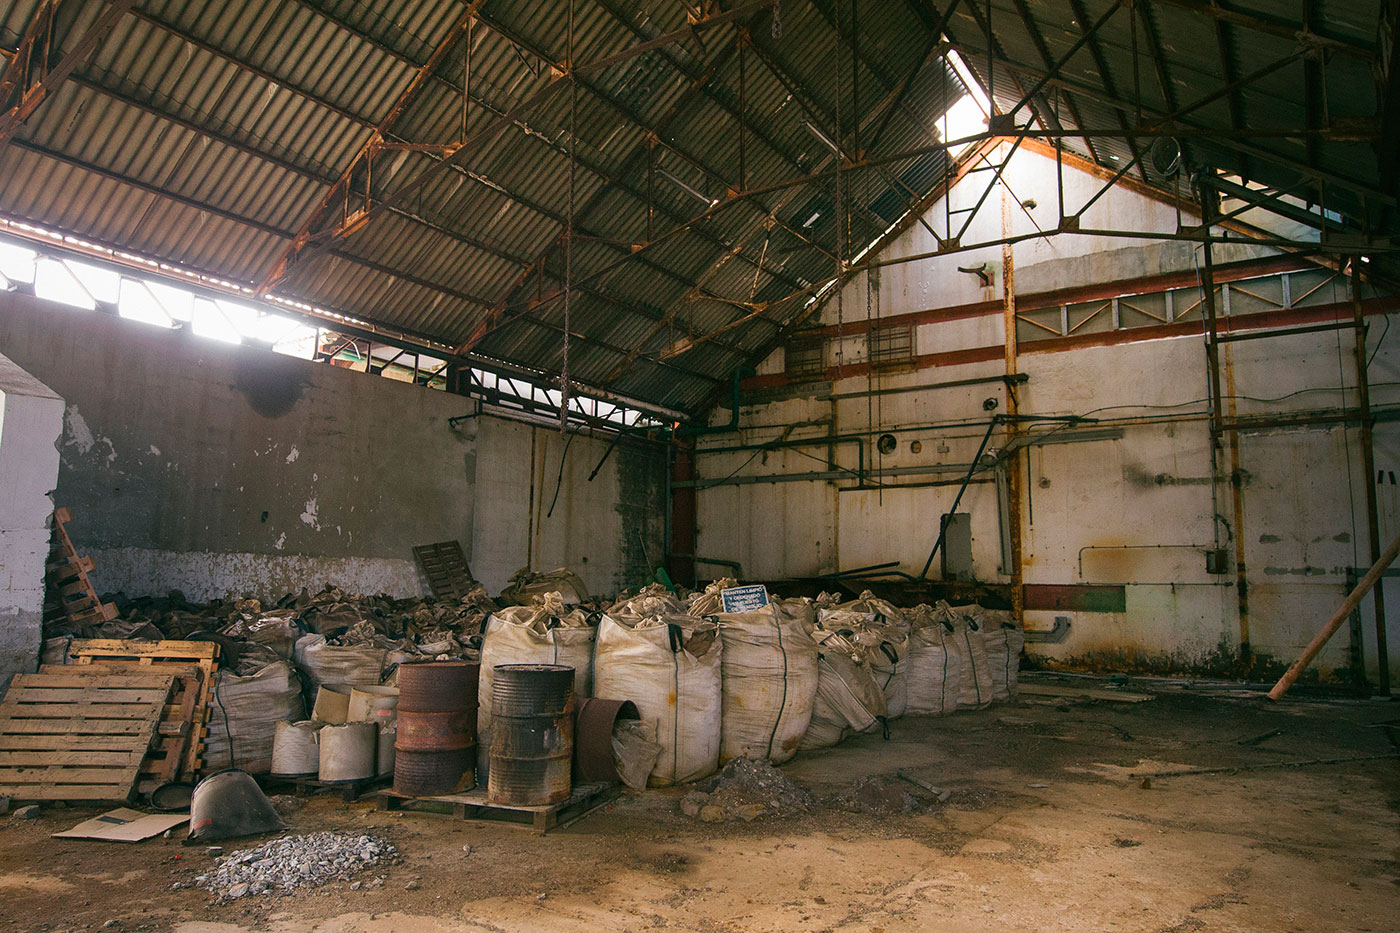 Los almacenes fueron abandonados a toda prisa, dejando atrás sacos llenos de residuos químicos y precursores listos para fabricar lindano